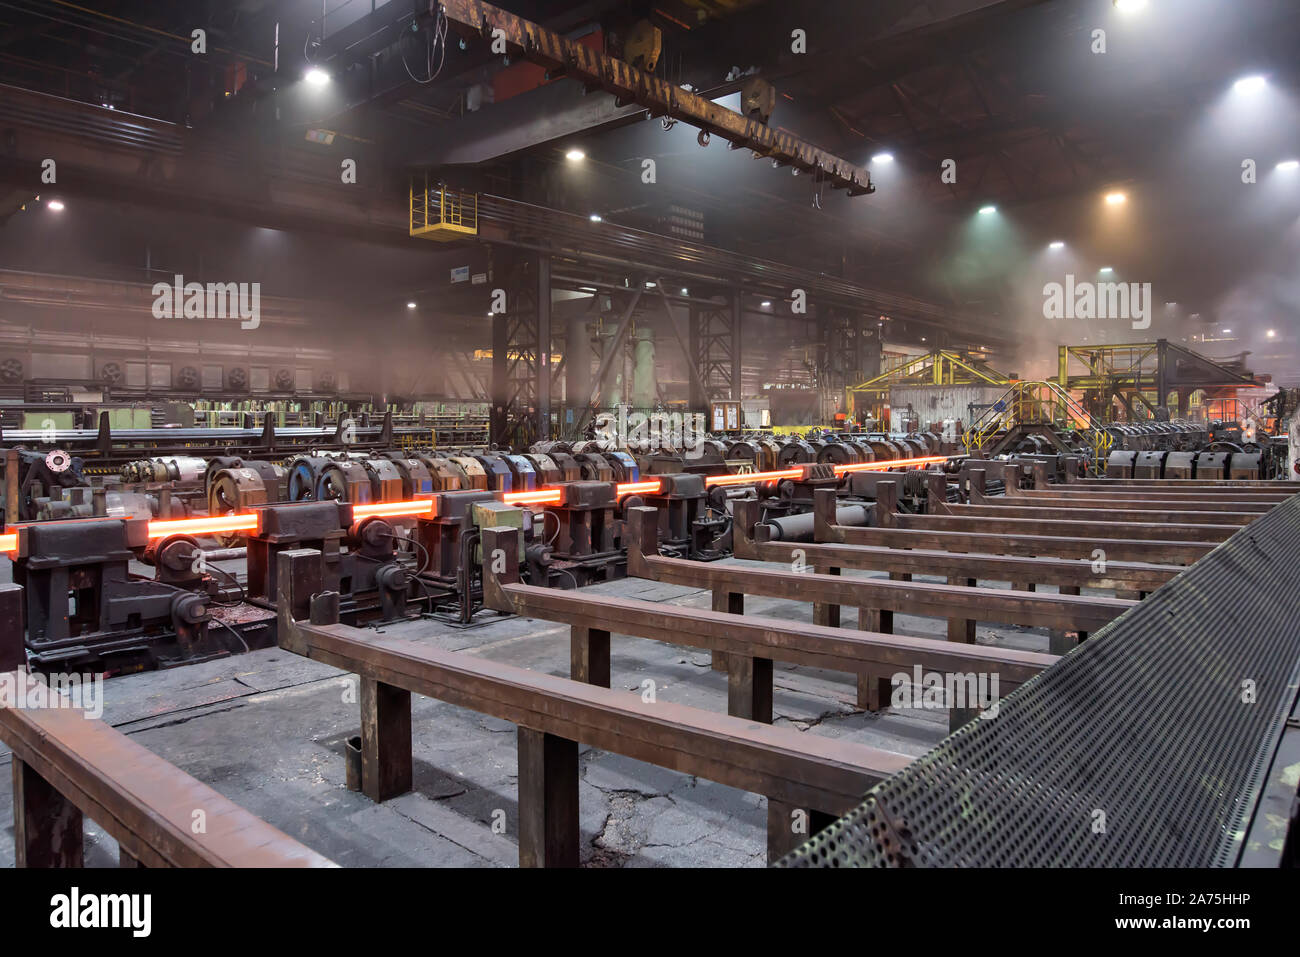 Produktion von Metall Röhrchen in einem Stahl- und Walzwerk - Architektur und Technologie in einem Industrieunternehmen Stockfoto